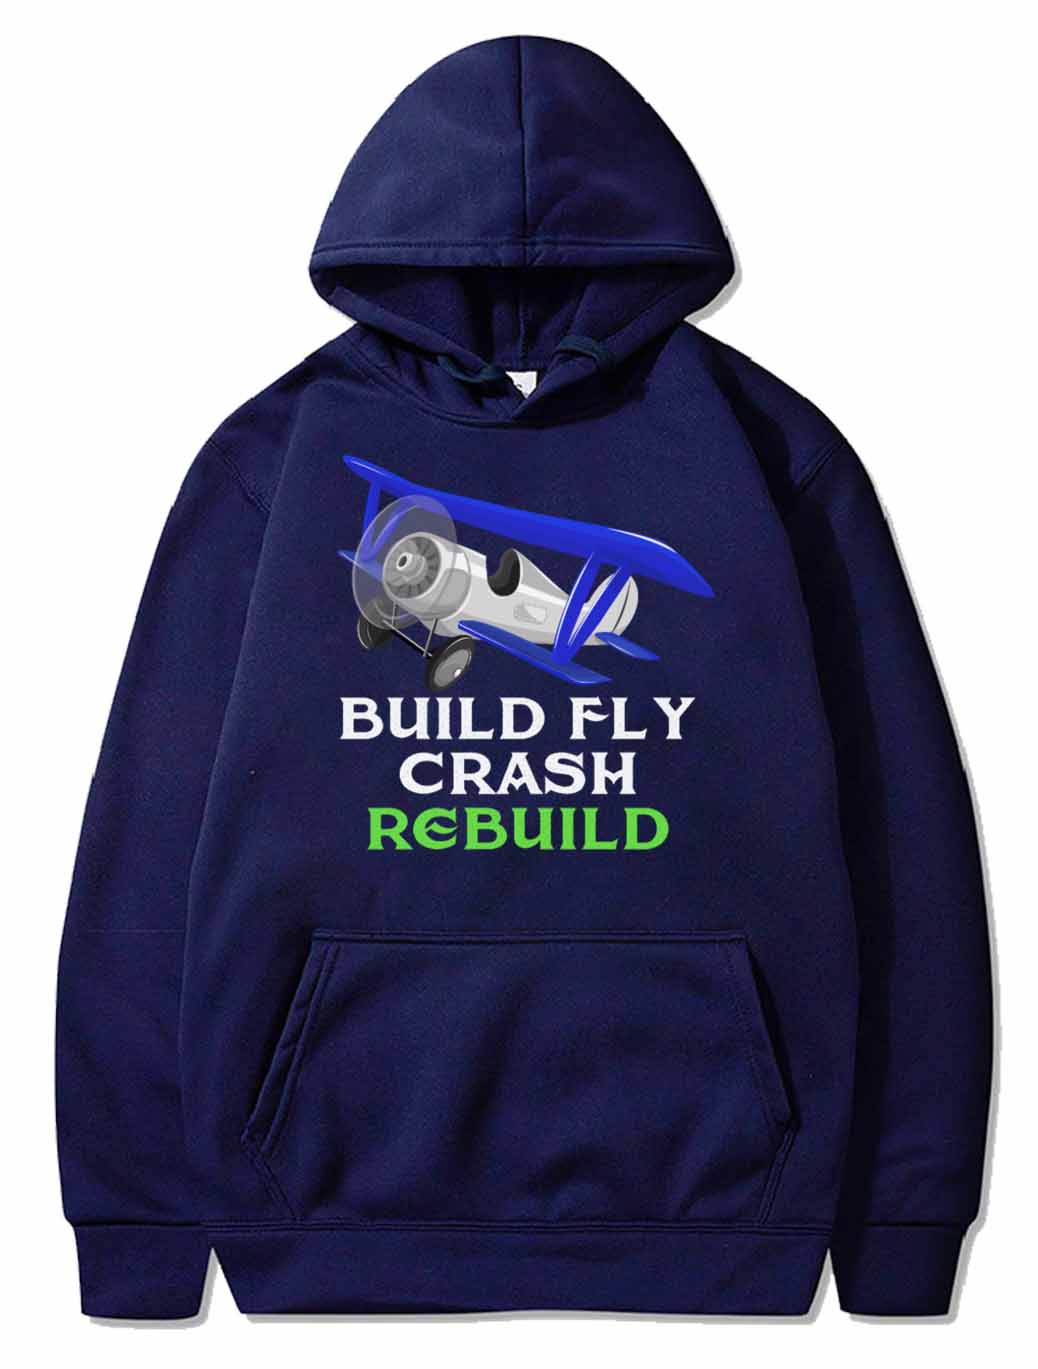 Build Fly Crash Rebuild - RC Pilot Gift PULLOVER THE AV8R